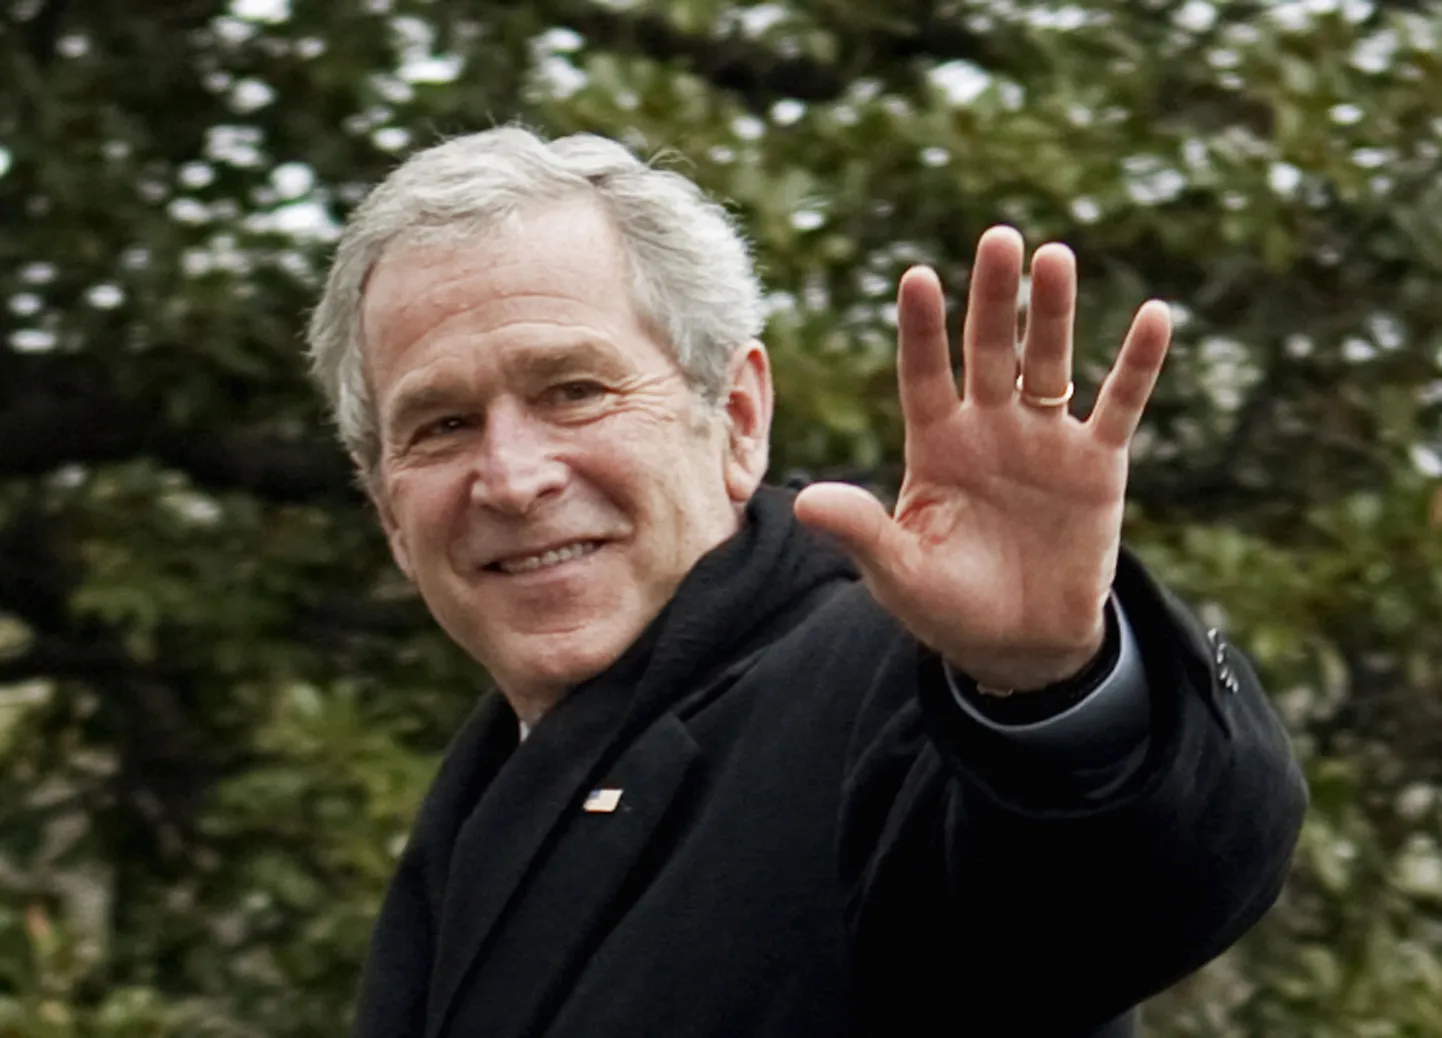 Бывший президент США Джордж Буш.